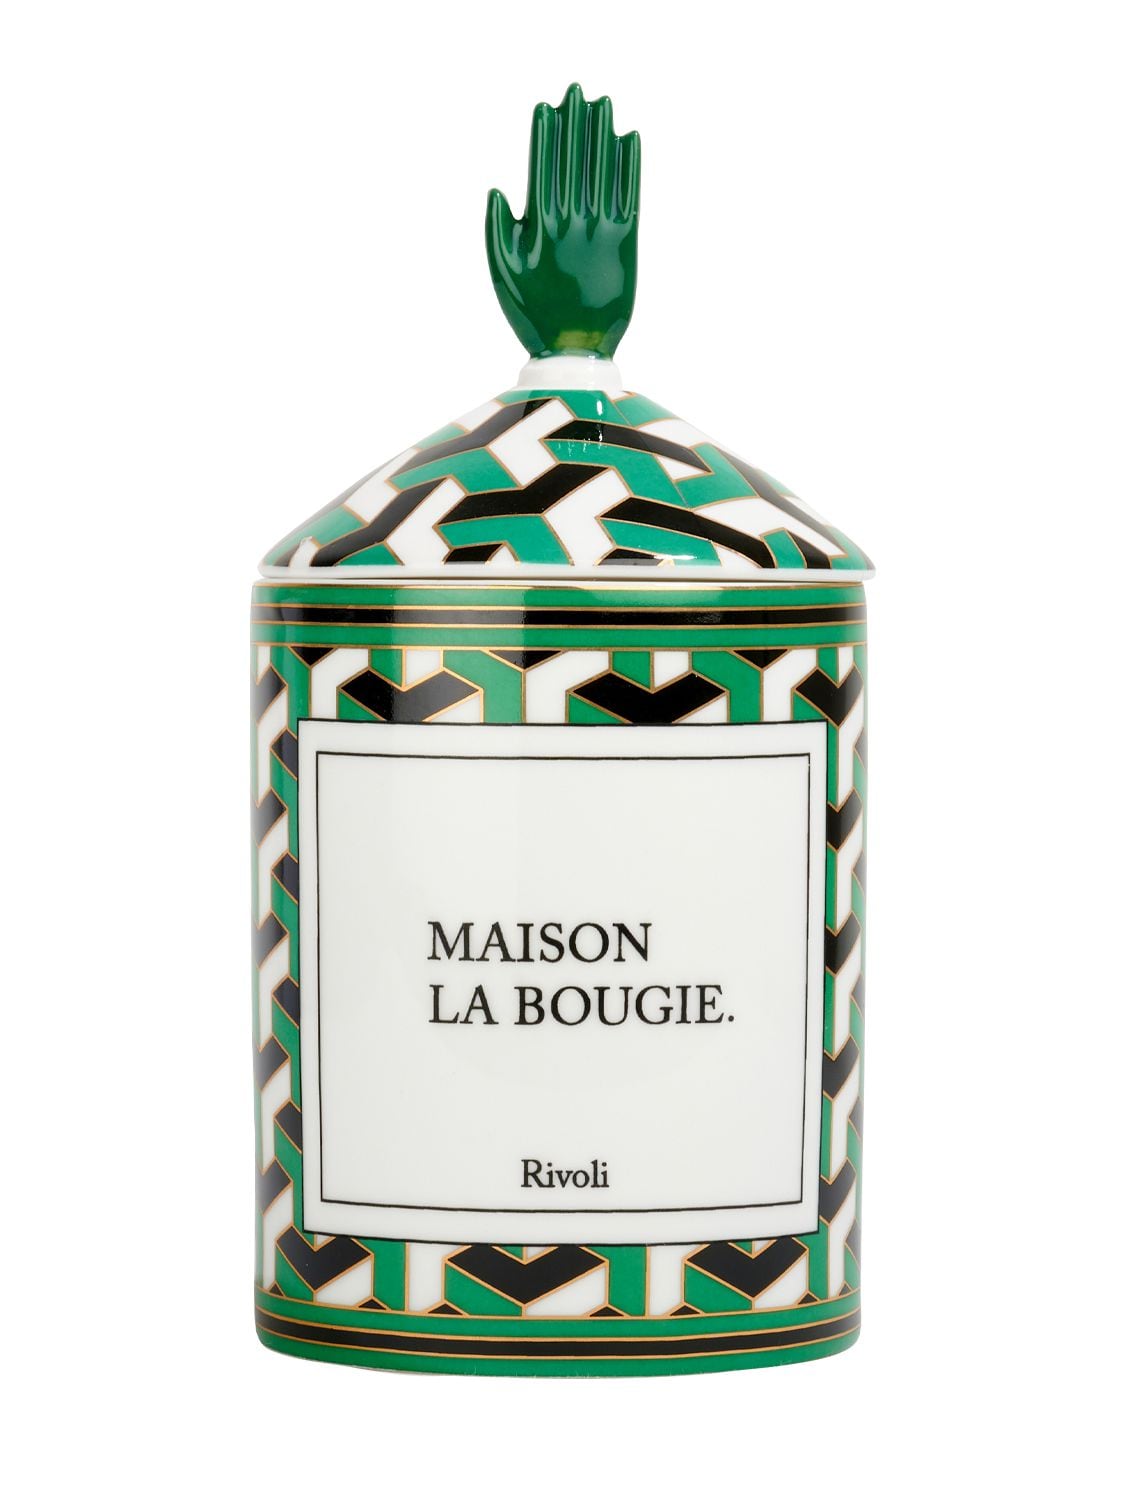 Maison La Bougie 350gr Rivoli Candle In Green